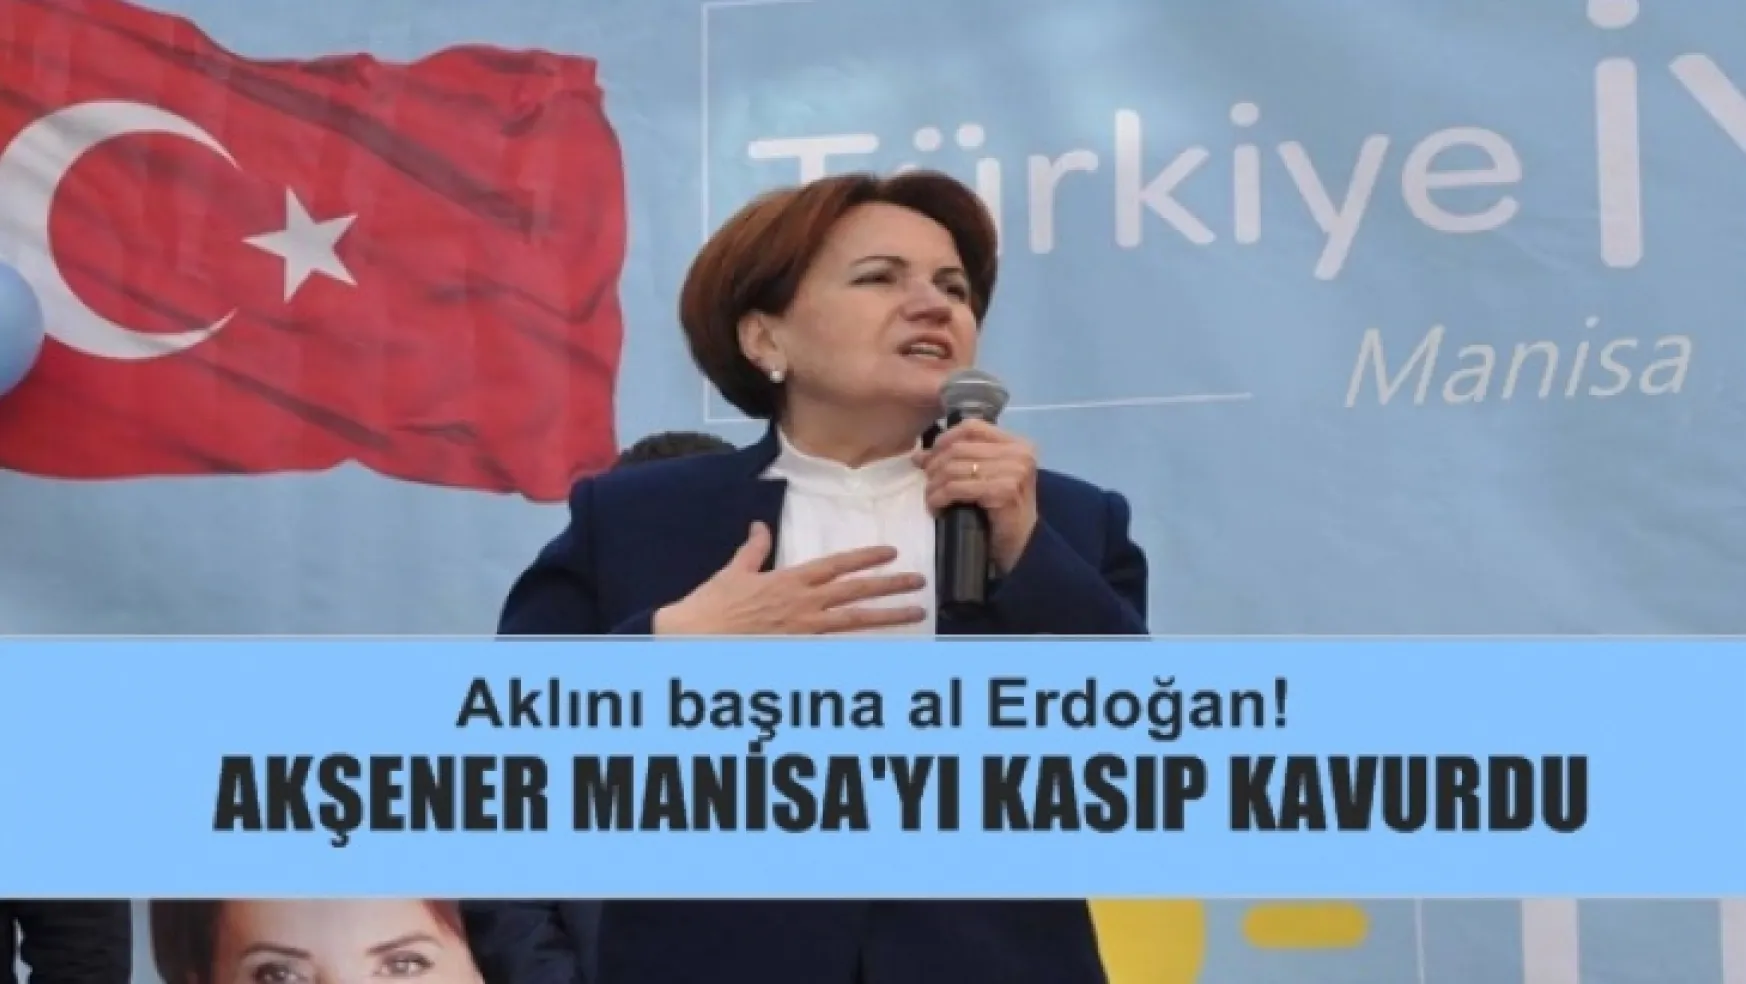 Akşener, Manisa'da Konuştu, Aklını başına al Erdoğan!